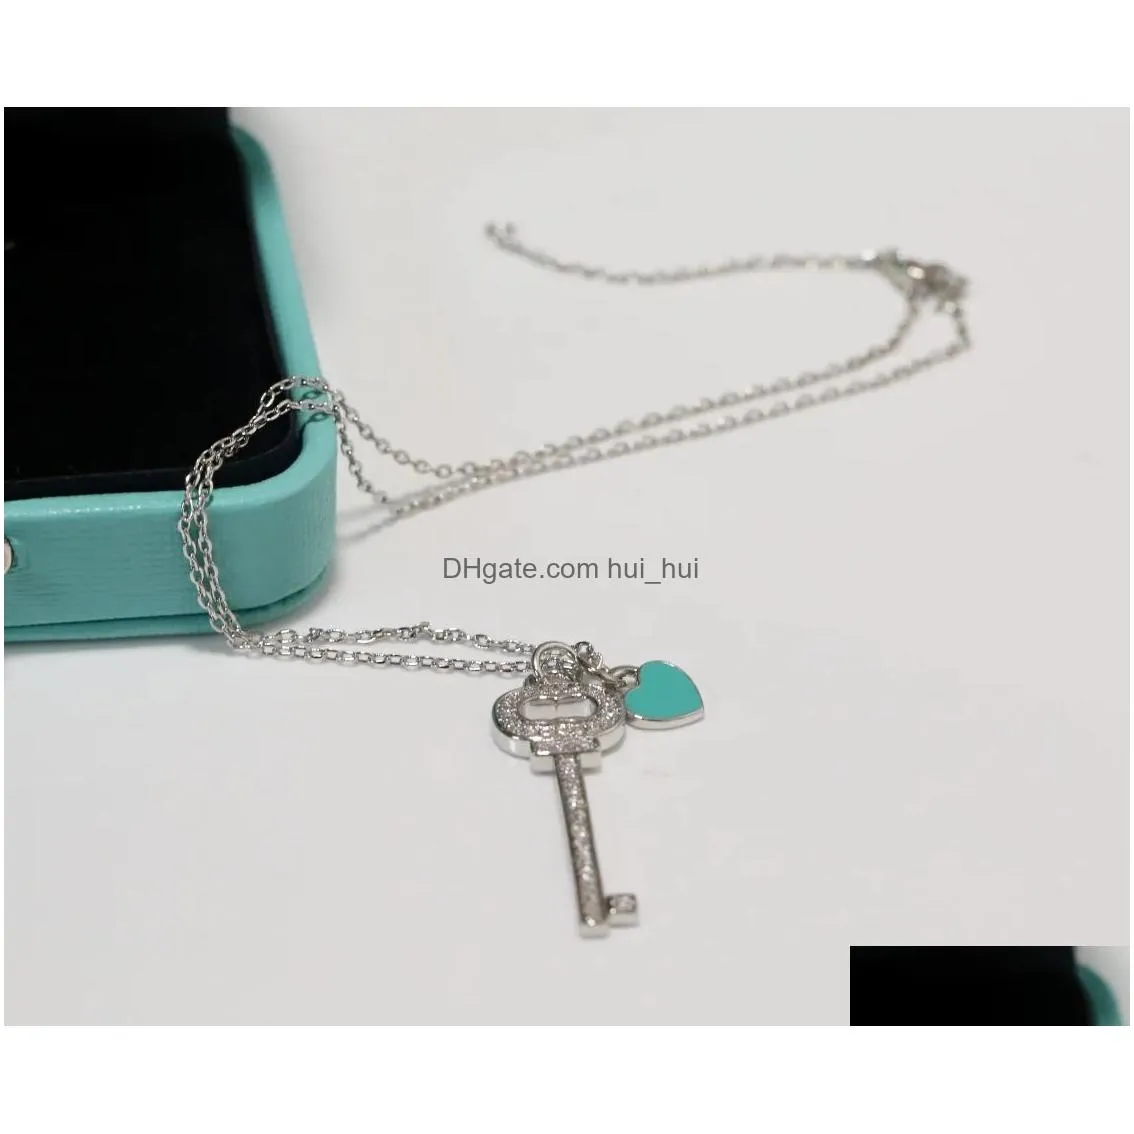 s925 knot pendant necklace 100% 925 silver necklaces blue enamel key chains tiff t-home